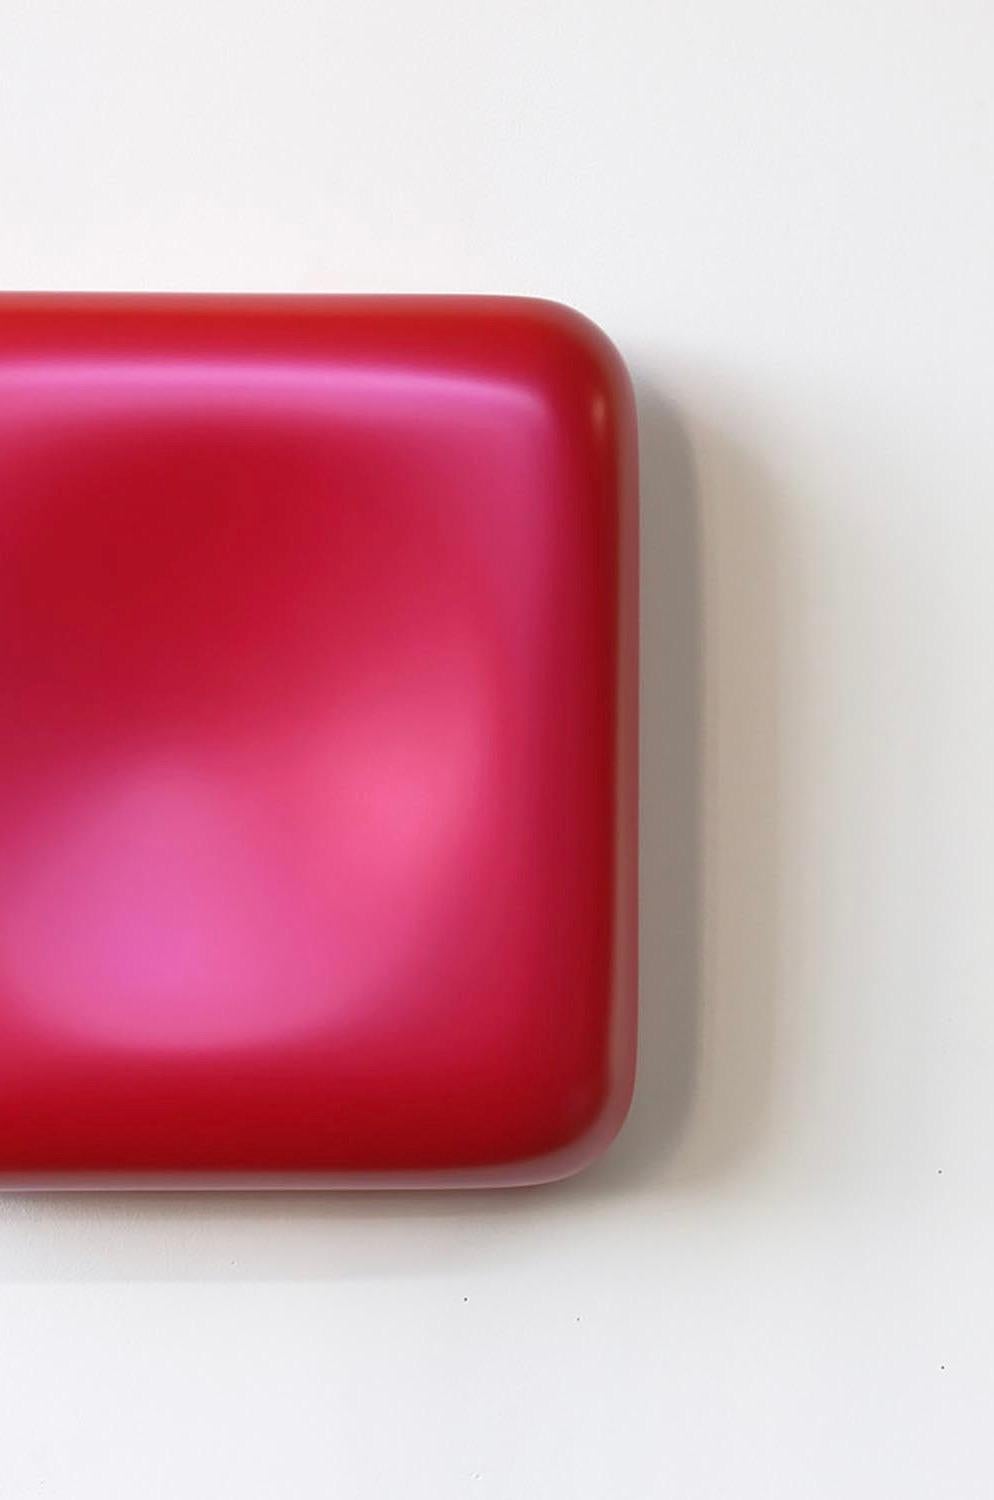 Dieses schöne, minimalistische, skulpturale Werk in Rosa erforscht die suggestive Kraft der monochromen Farbe. Ursprünglich als Maler tätig, konzentrierte sich Thompson auf den Minimalismus. In seinem bildhauerischen Werk dient die Monochromie als